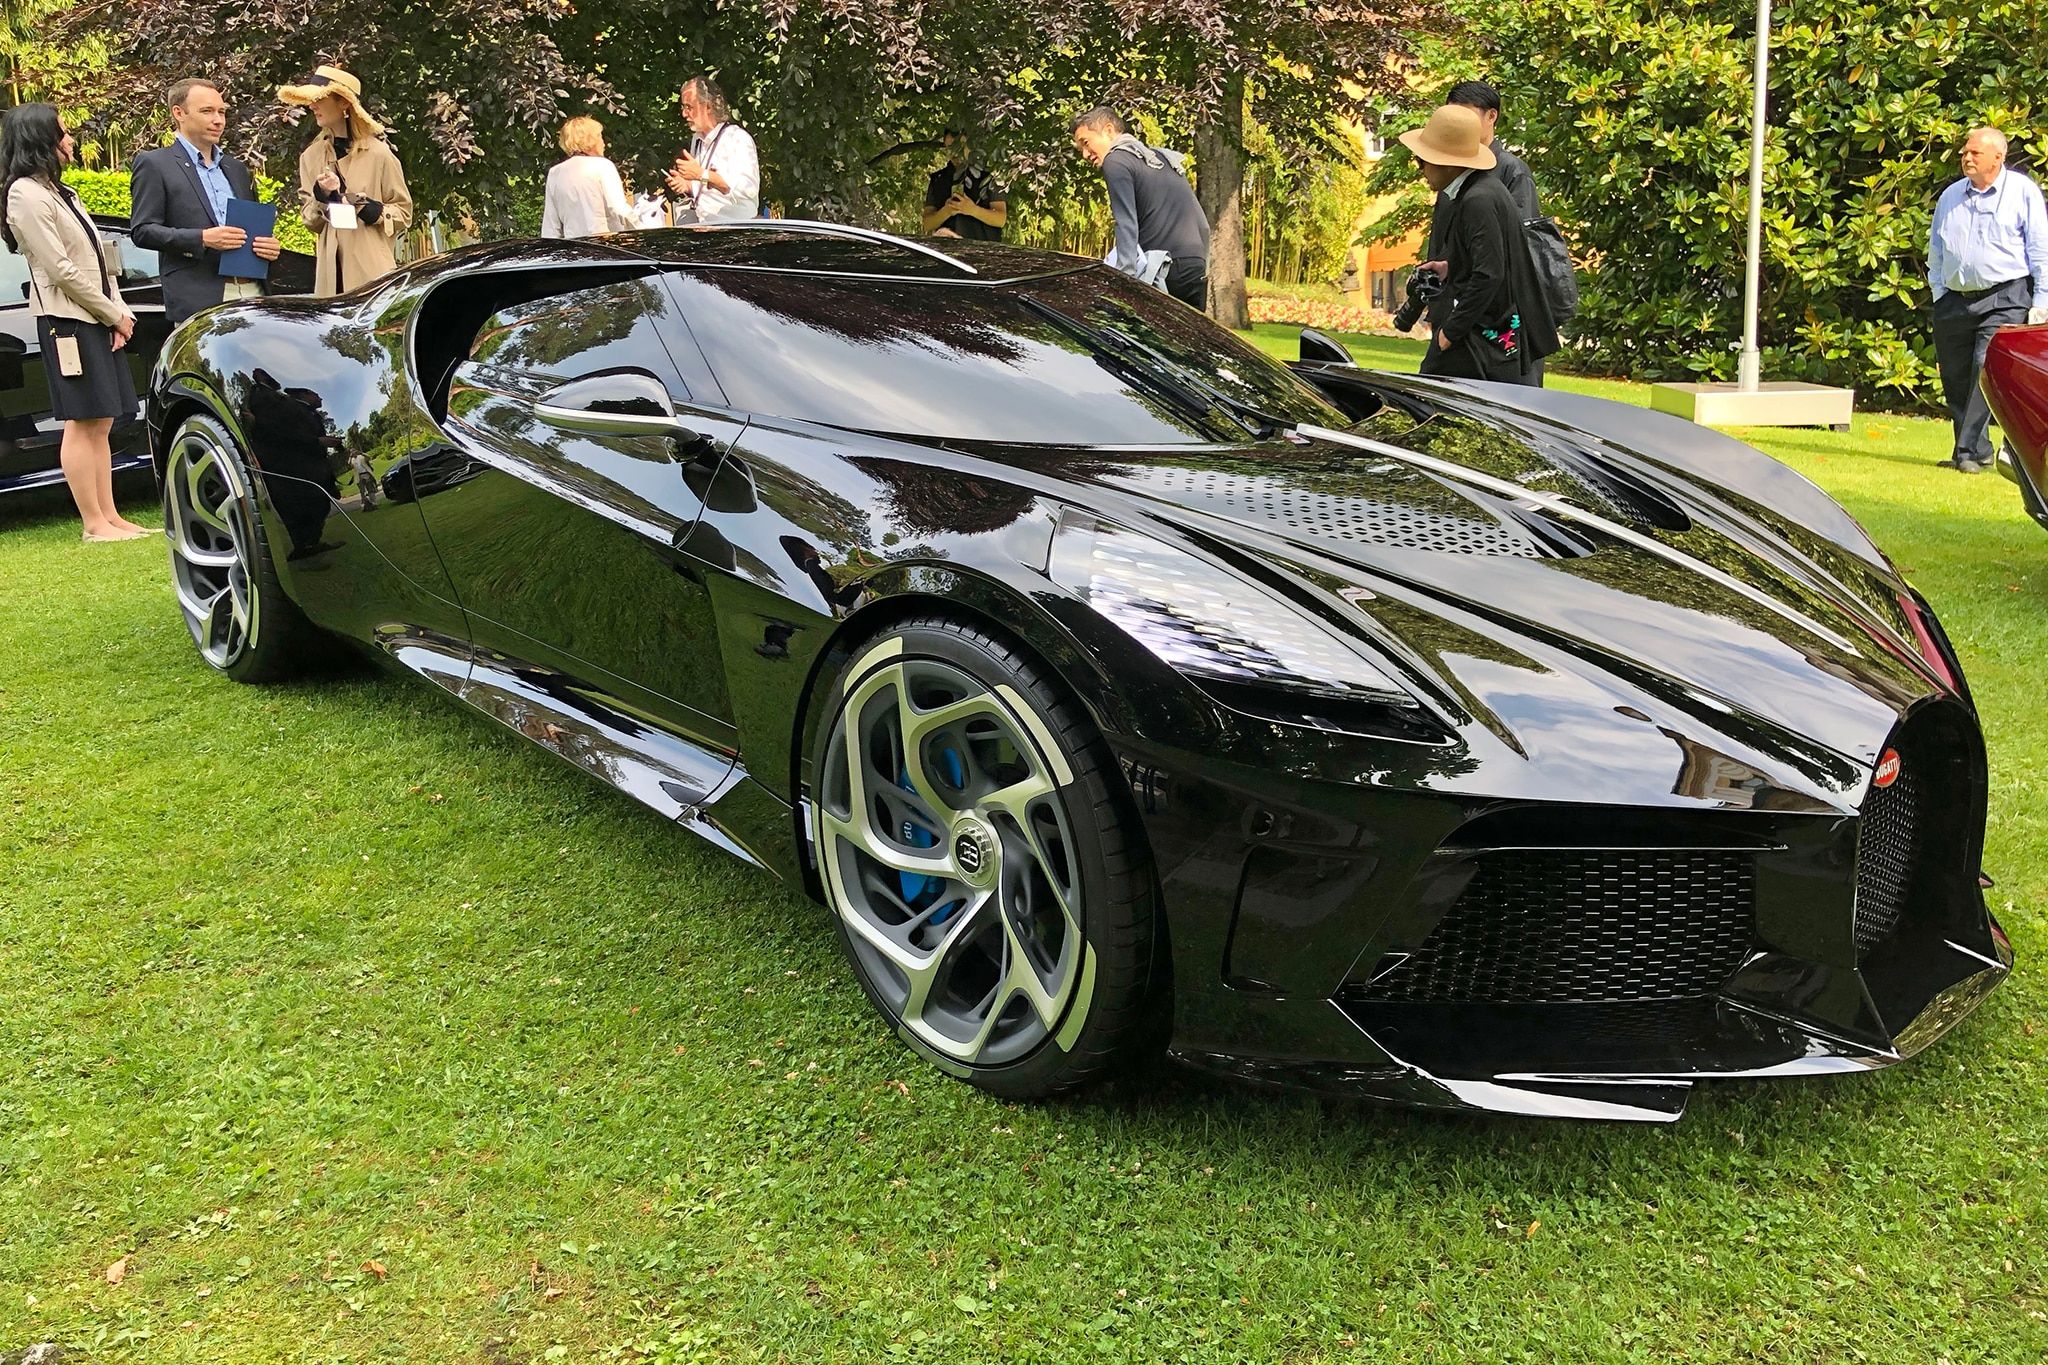 Bugatti La Voiture Noire parked outside